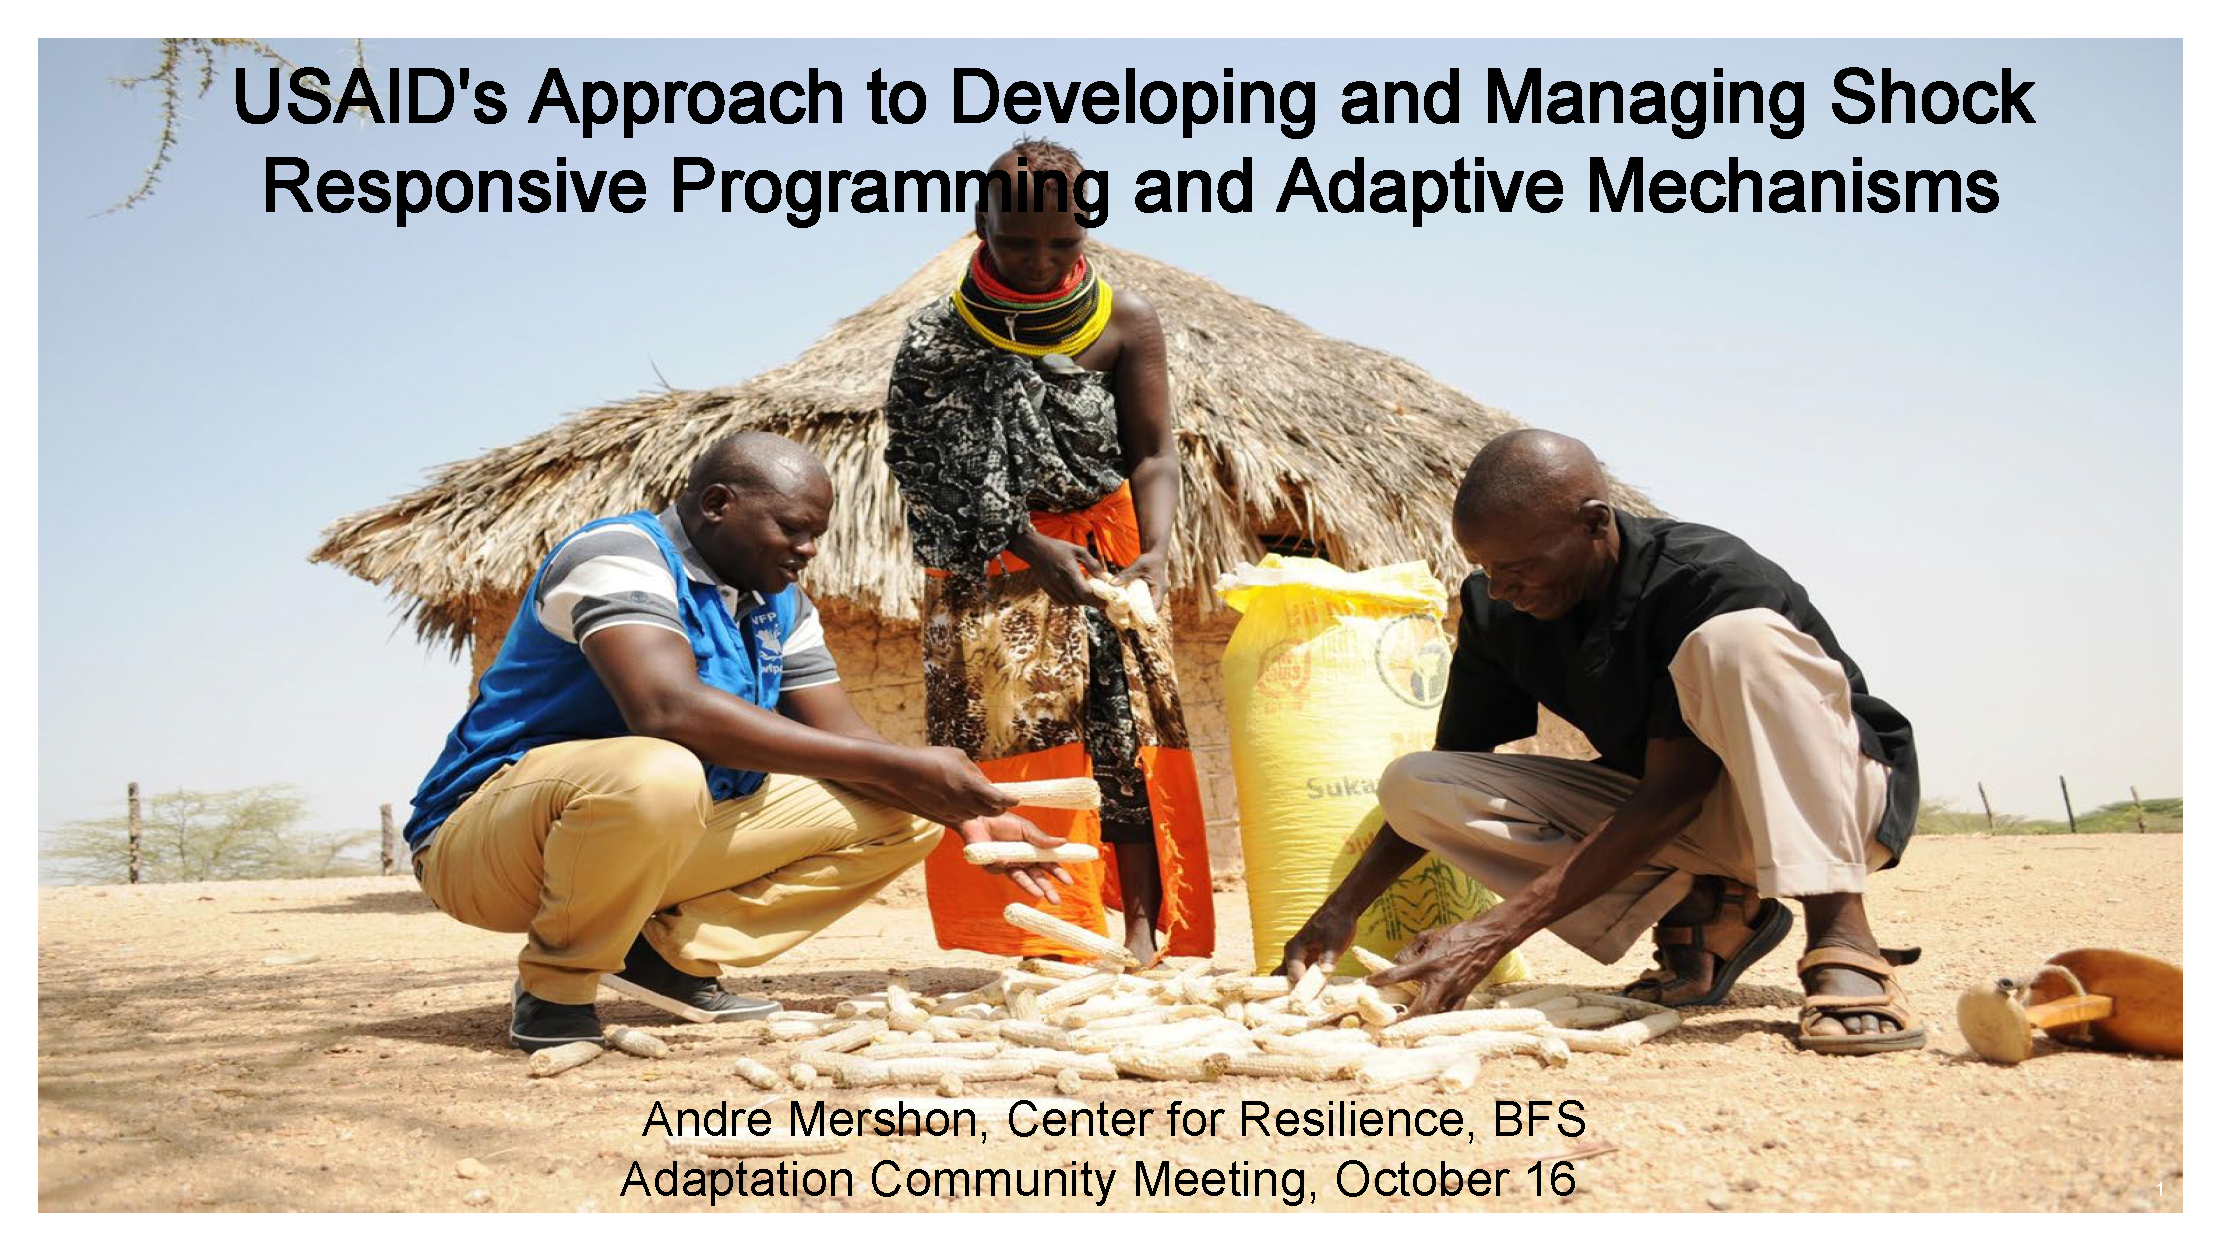 Page de couverture de l'approche de l'USAID pour développer et gérer des programmes réactifs aux chocs et des mécanismes adaptatifs